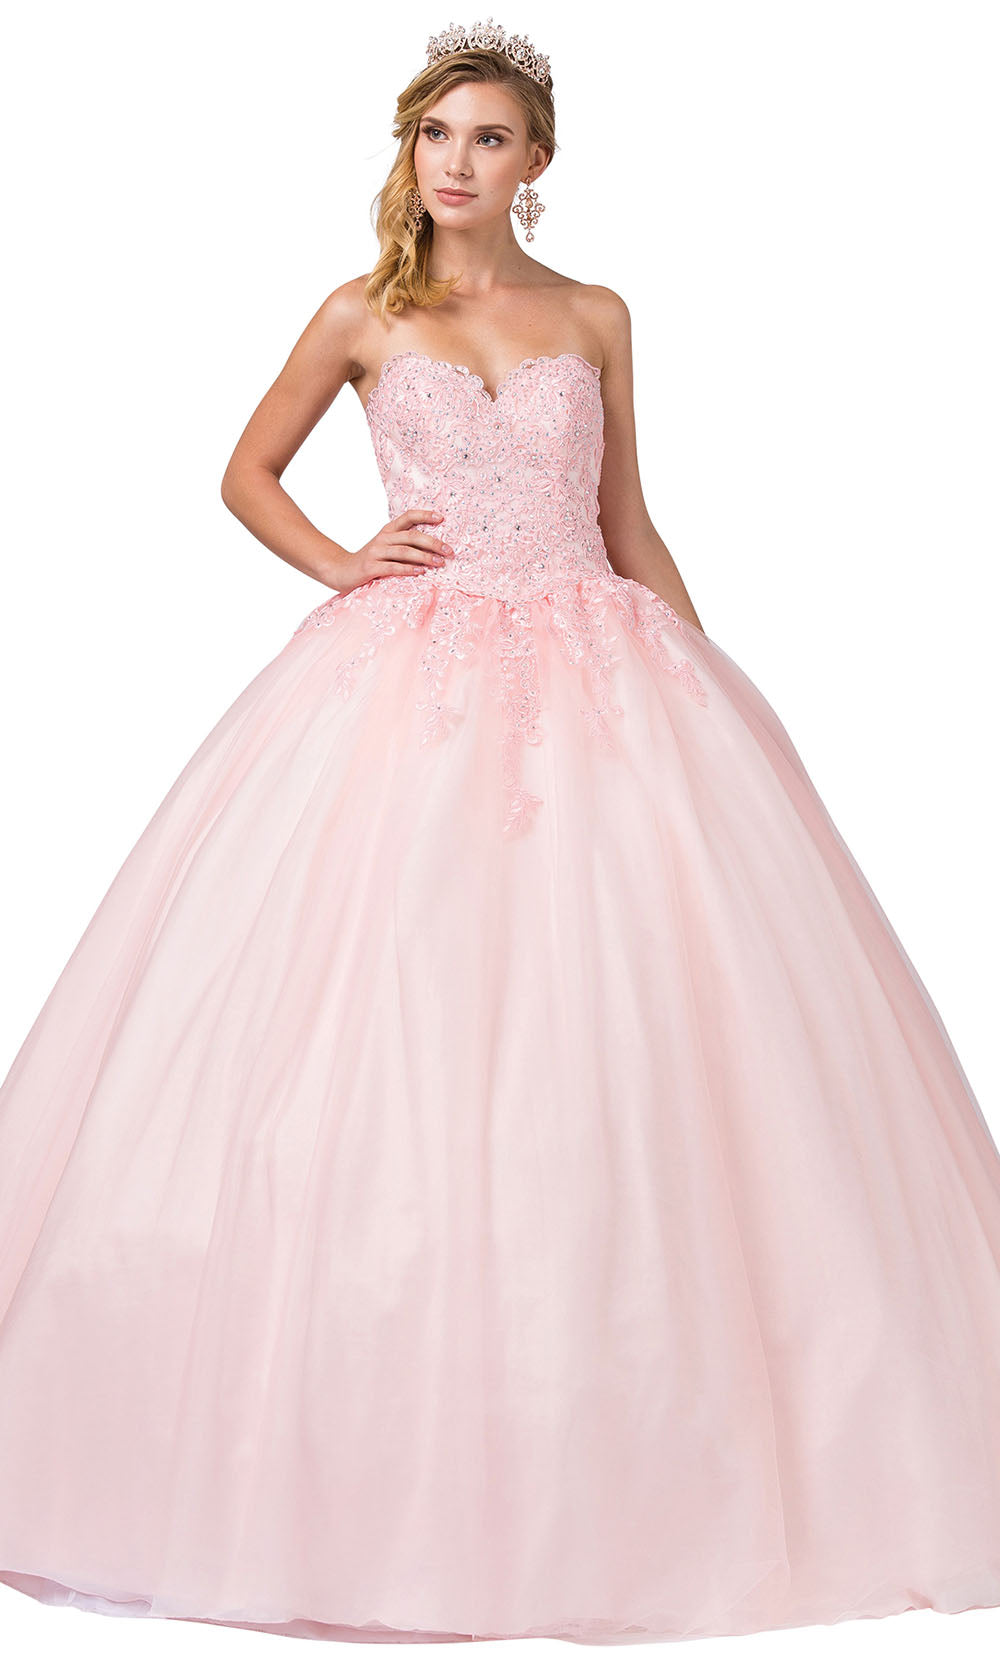 Dancing Queen - 1337 Strapless Beaded Applique Ballgown In Pink